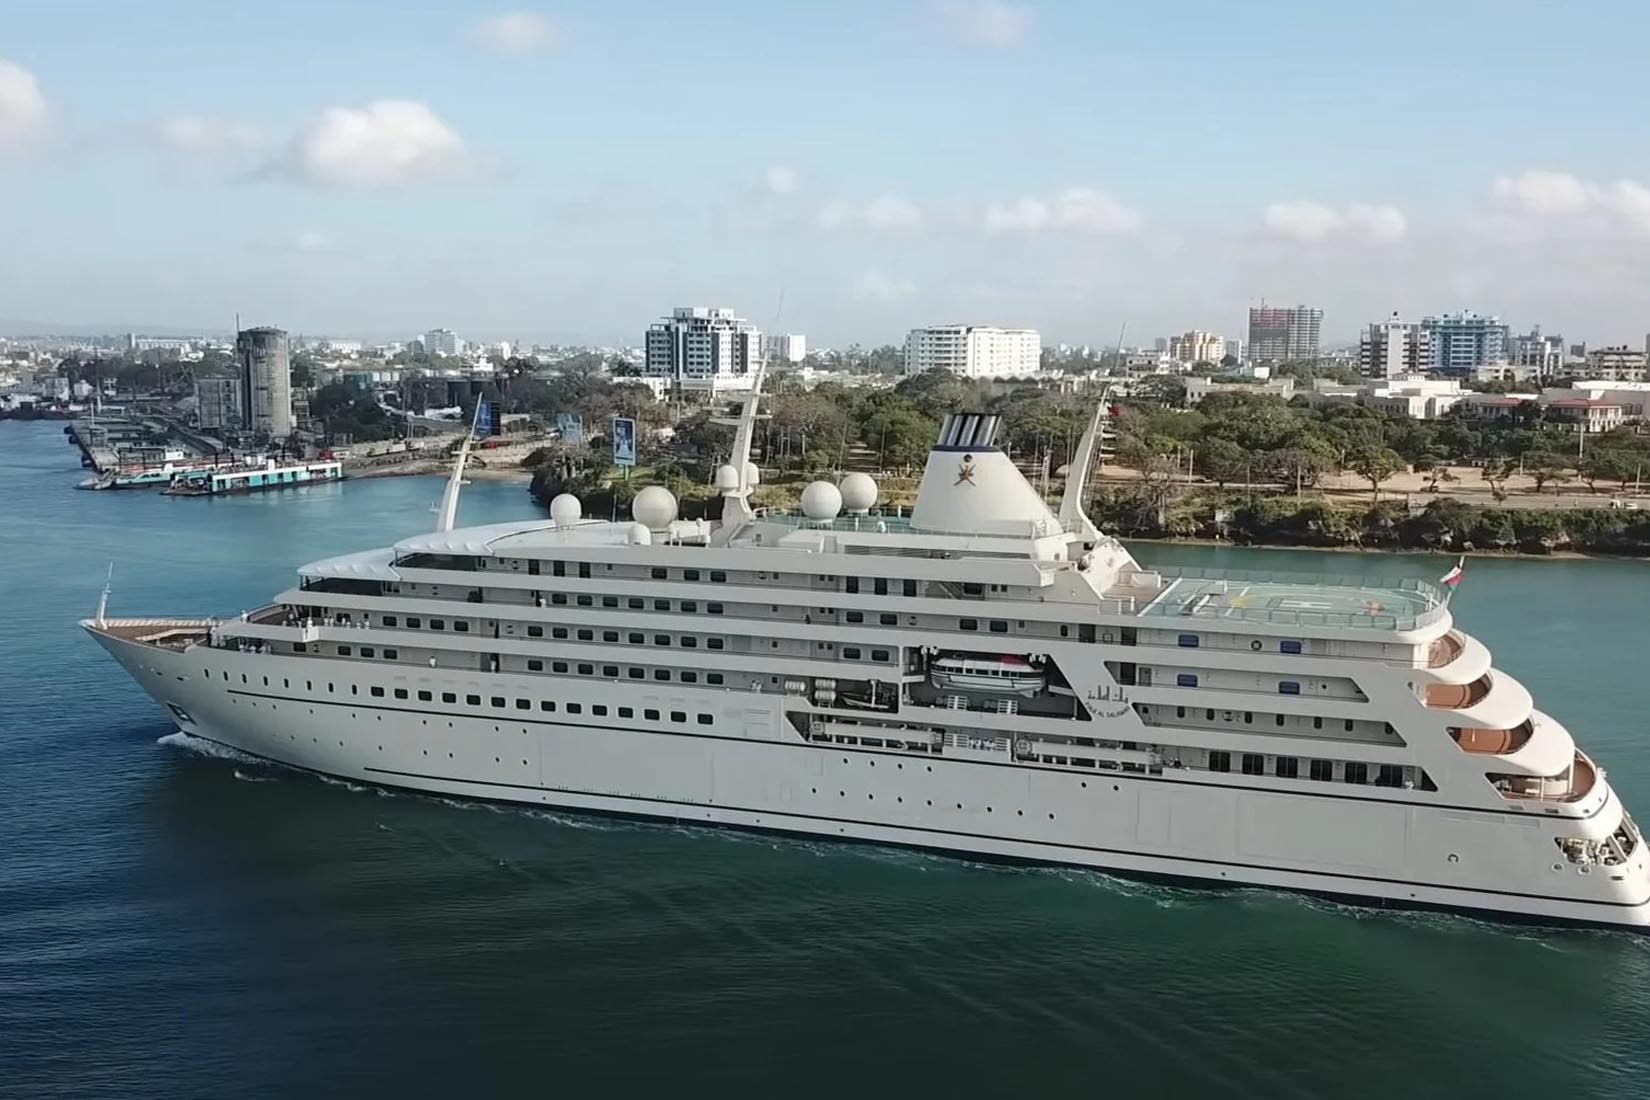 largest yacht fulk al salamah review Luxe Digital